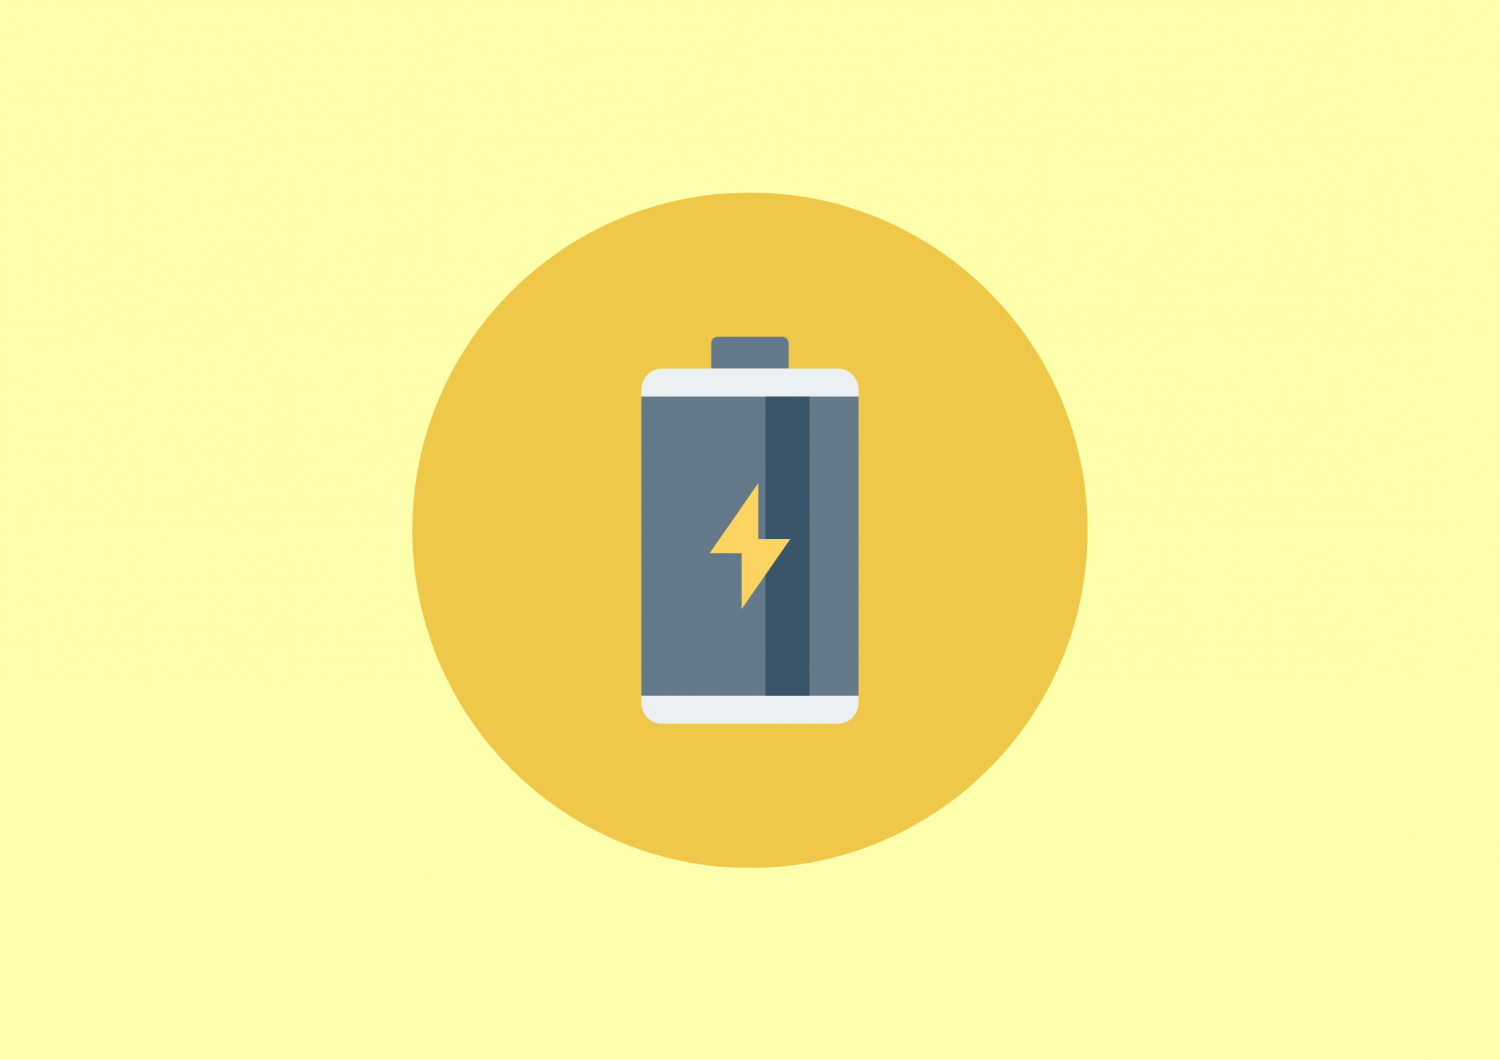 iOS14.6アップデート後、バッテリー消費と発熱が増加と指摘されています。